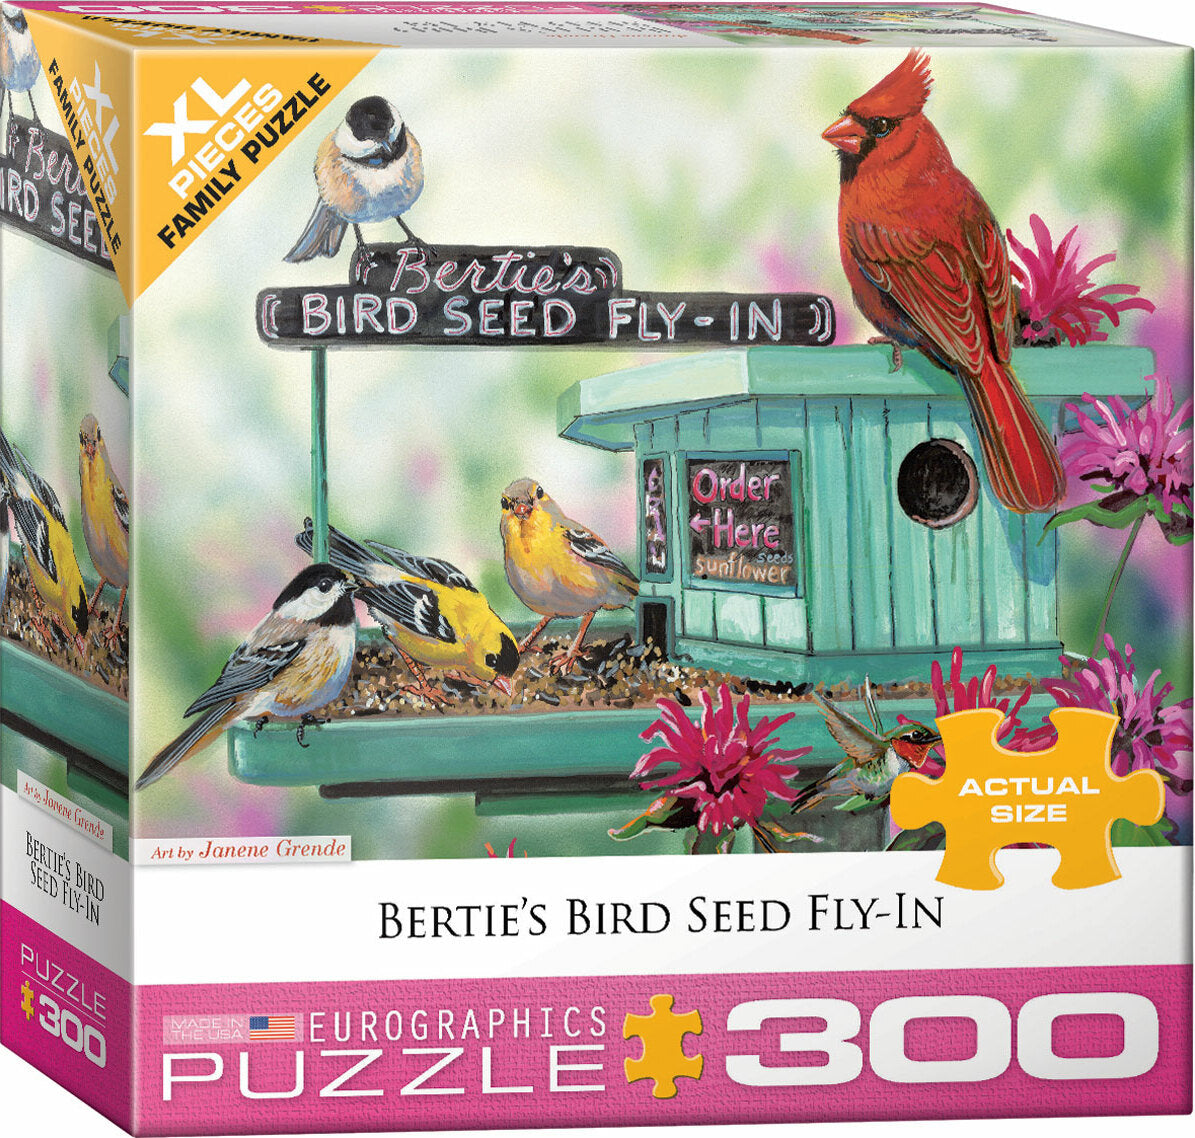 Bertie's Bird Seed Fly-In by J